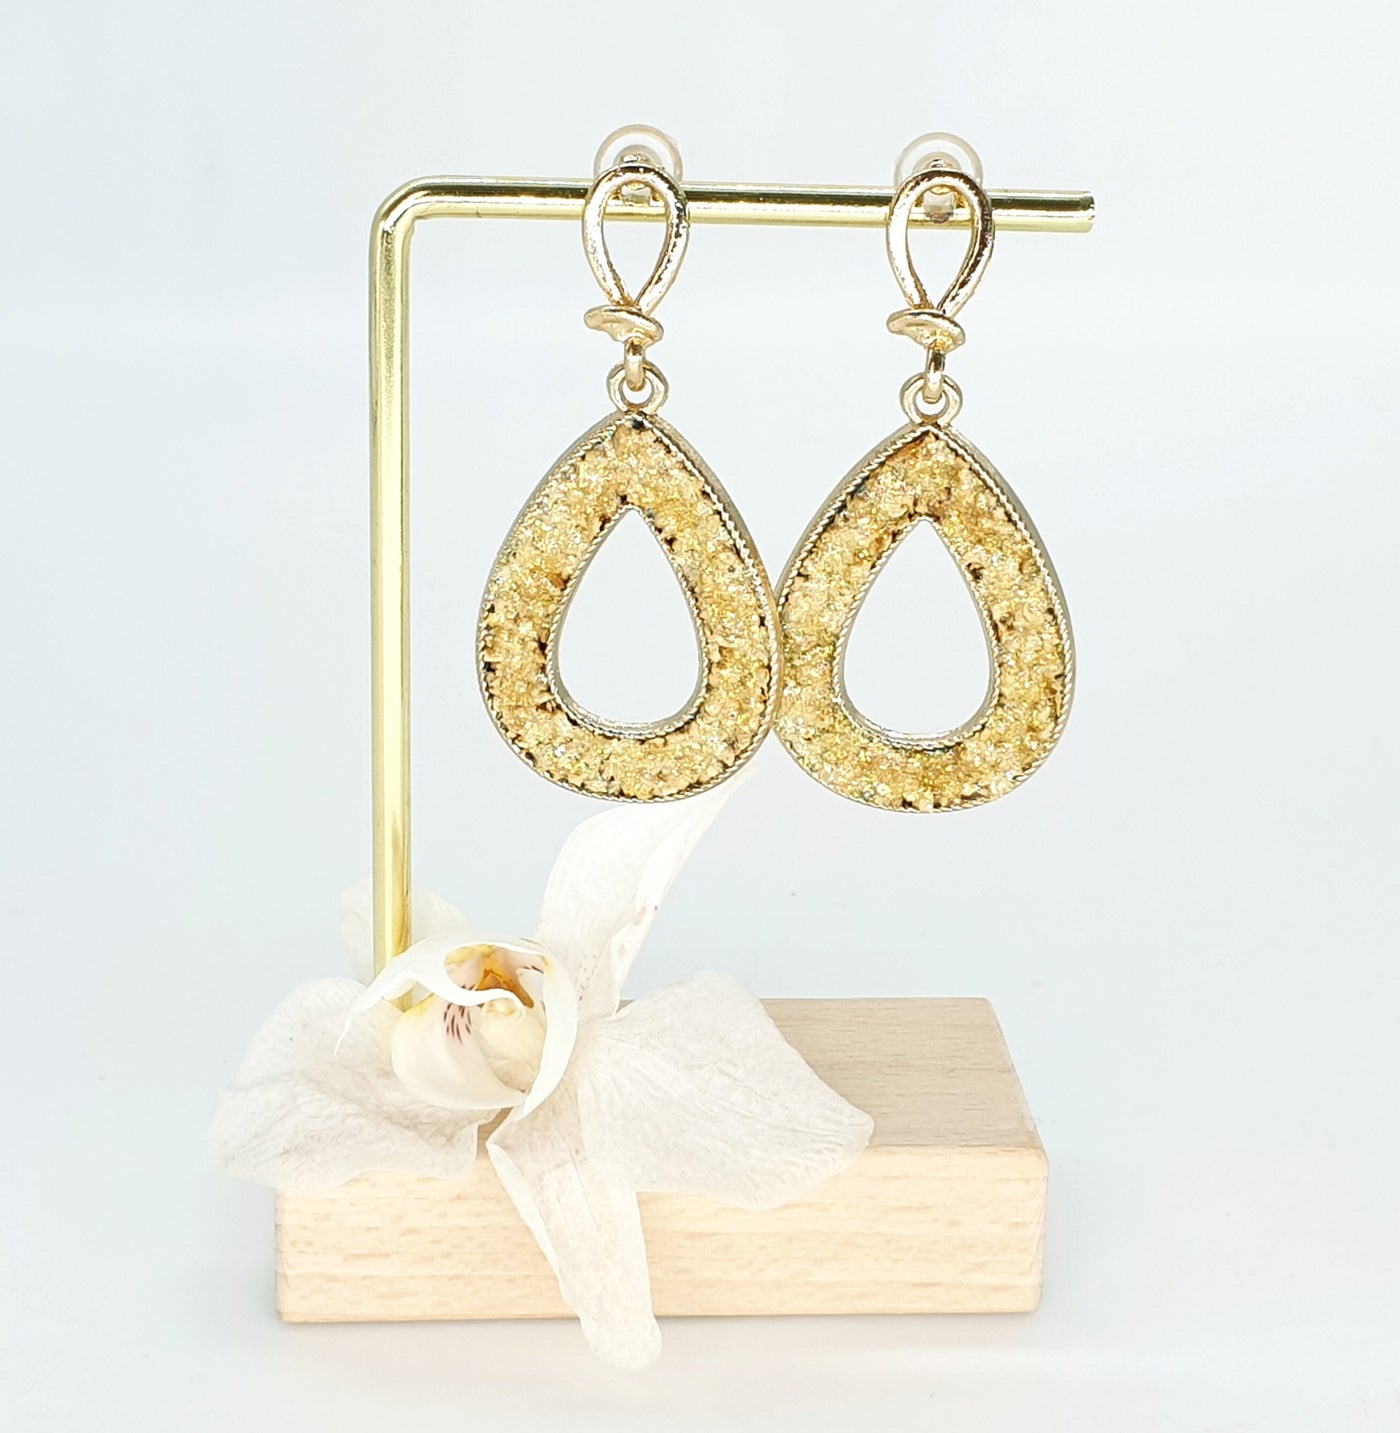 CORK Teardrop Twisted Gold Earrings Large Gold Cork Stud Modern Eco Friendly Jewelry Vegan Teardrop Studs Gold Filled 14k Teardrop Hoops